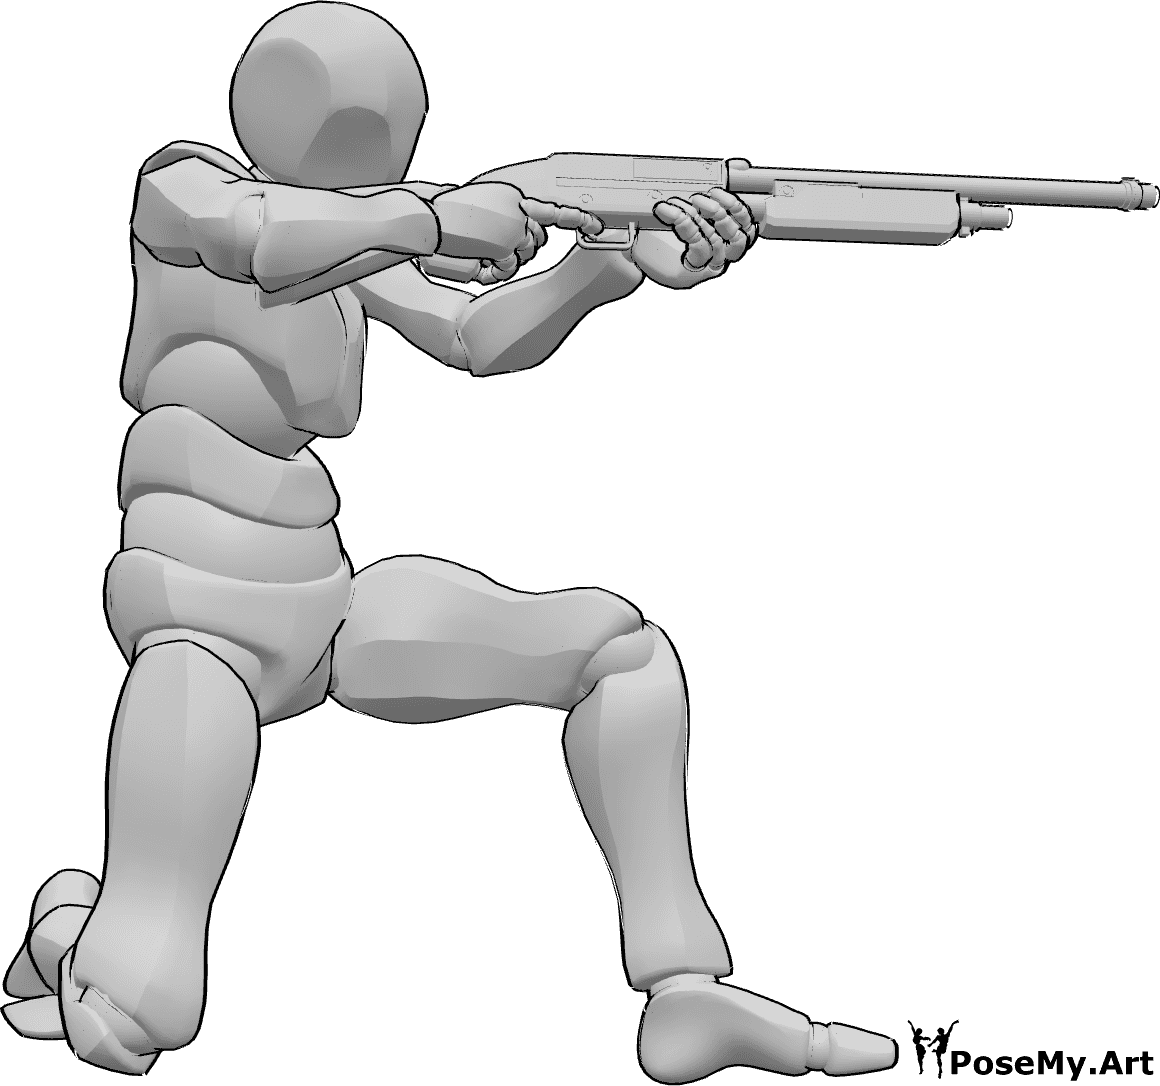 Riferimento alle pose- Posa di tiro con il fucile - L'uomo è inginocchiato, tiene il fucile con entrambe le mani, punta e spara in posa